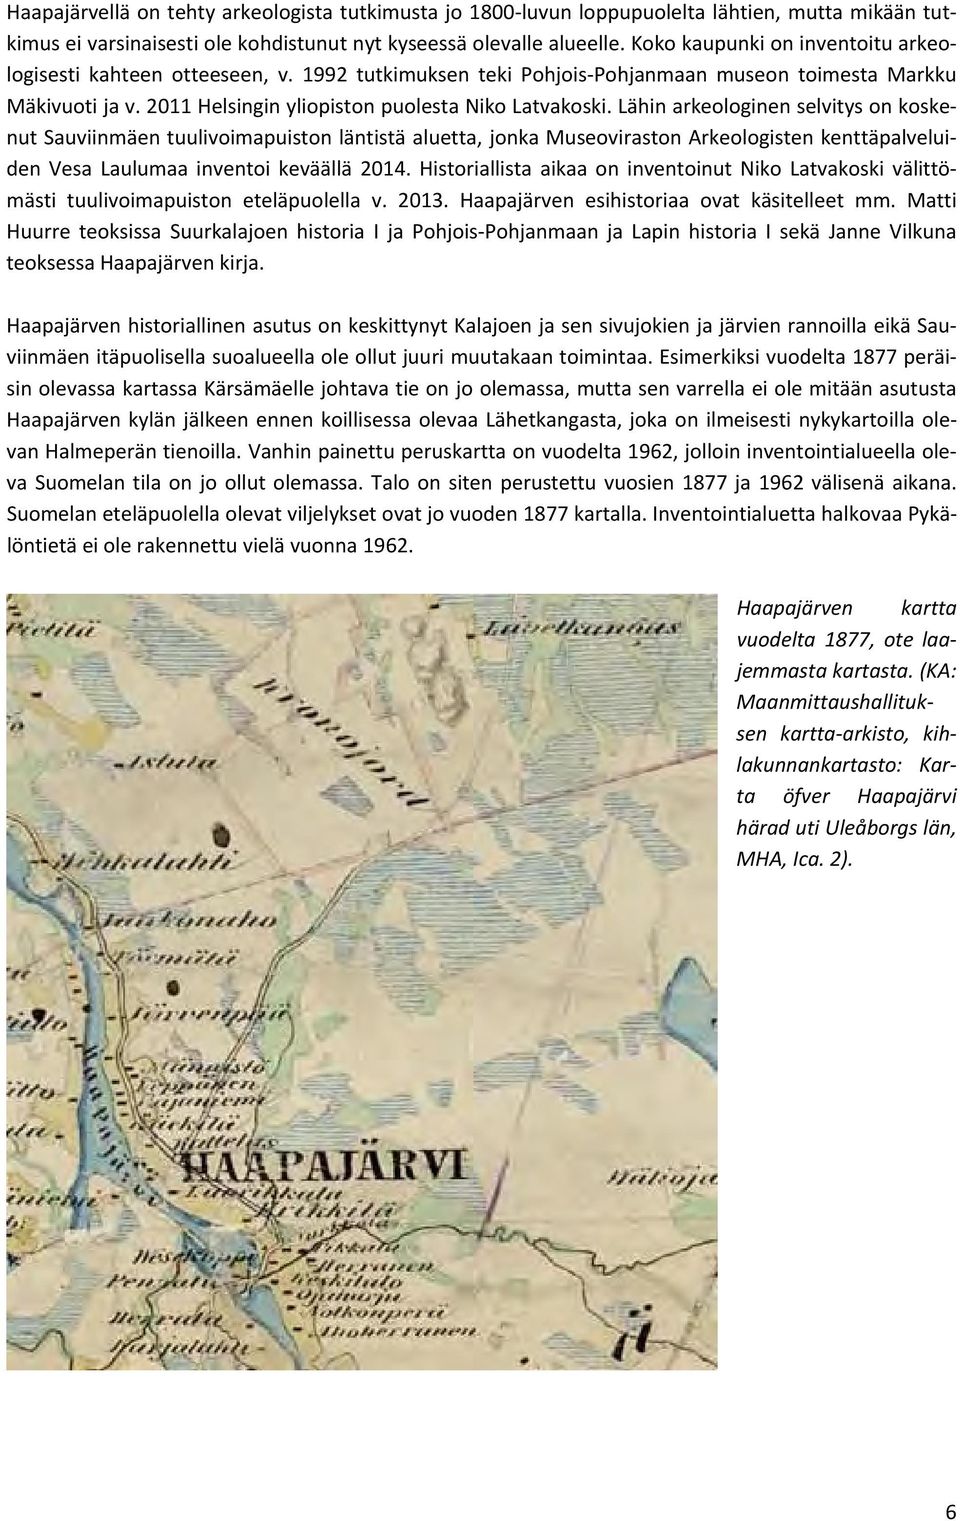 Lähin arkeologinen selvitys on koskenut Sauviinmäen tuulivoimapuiston läntistä aluetta, jonka Museoviraston Arkeologisten kenttäpalveluiden Vesa Laulumaa inventoi keväällä 2014.